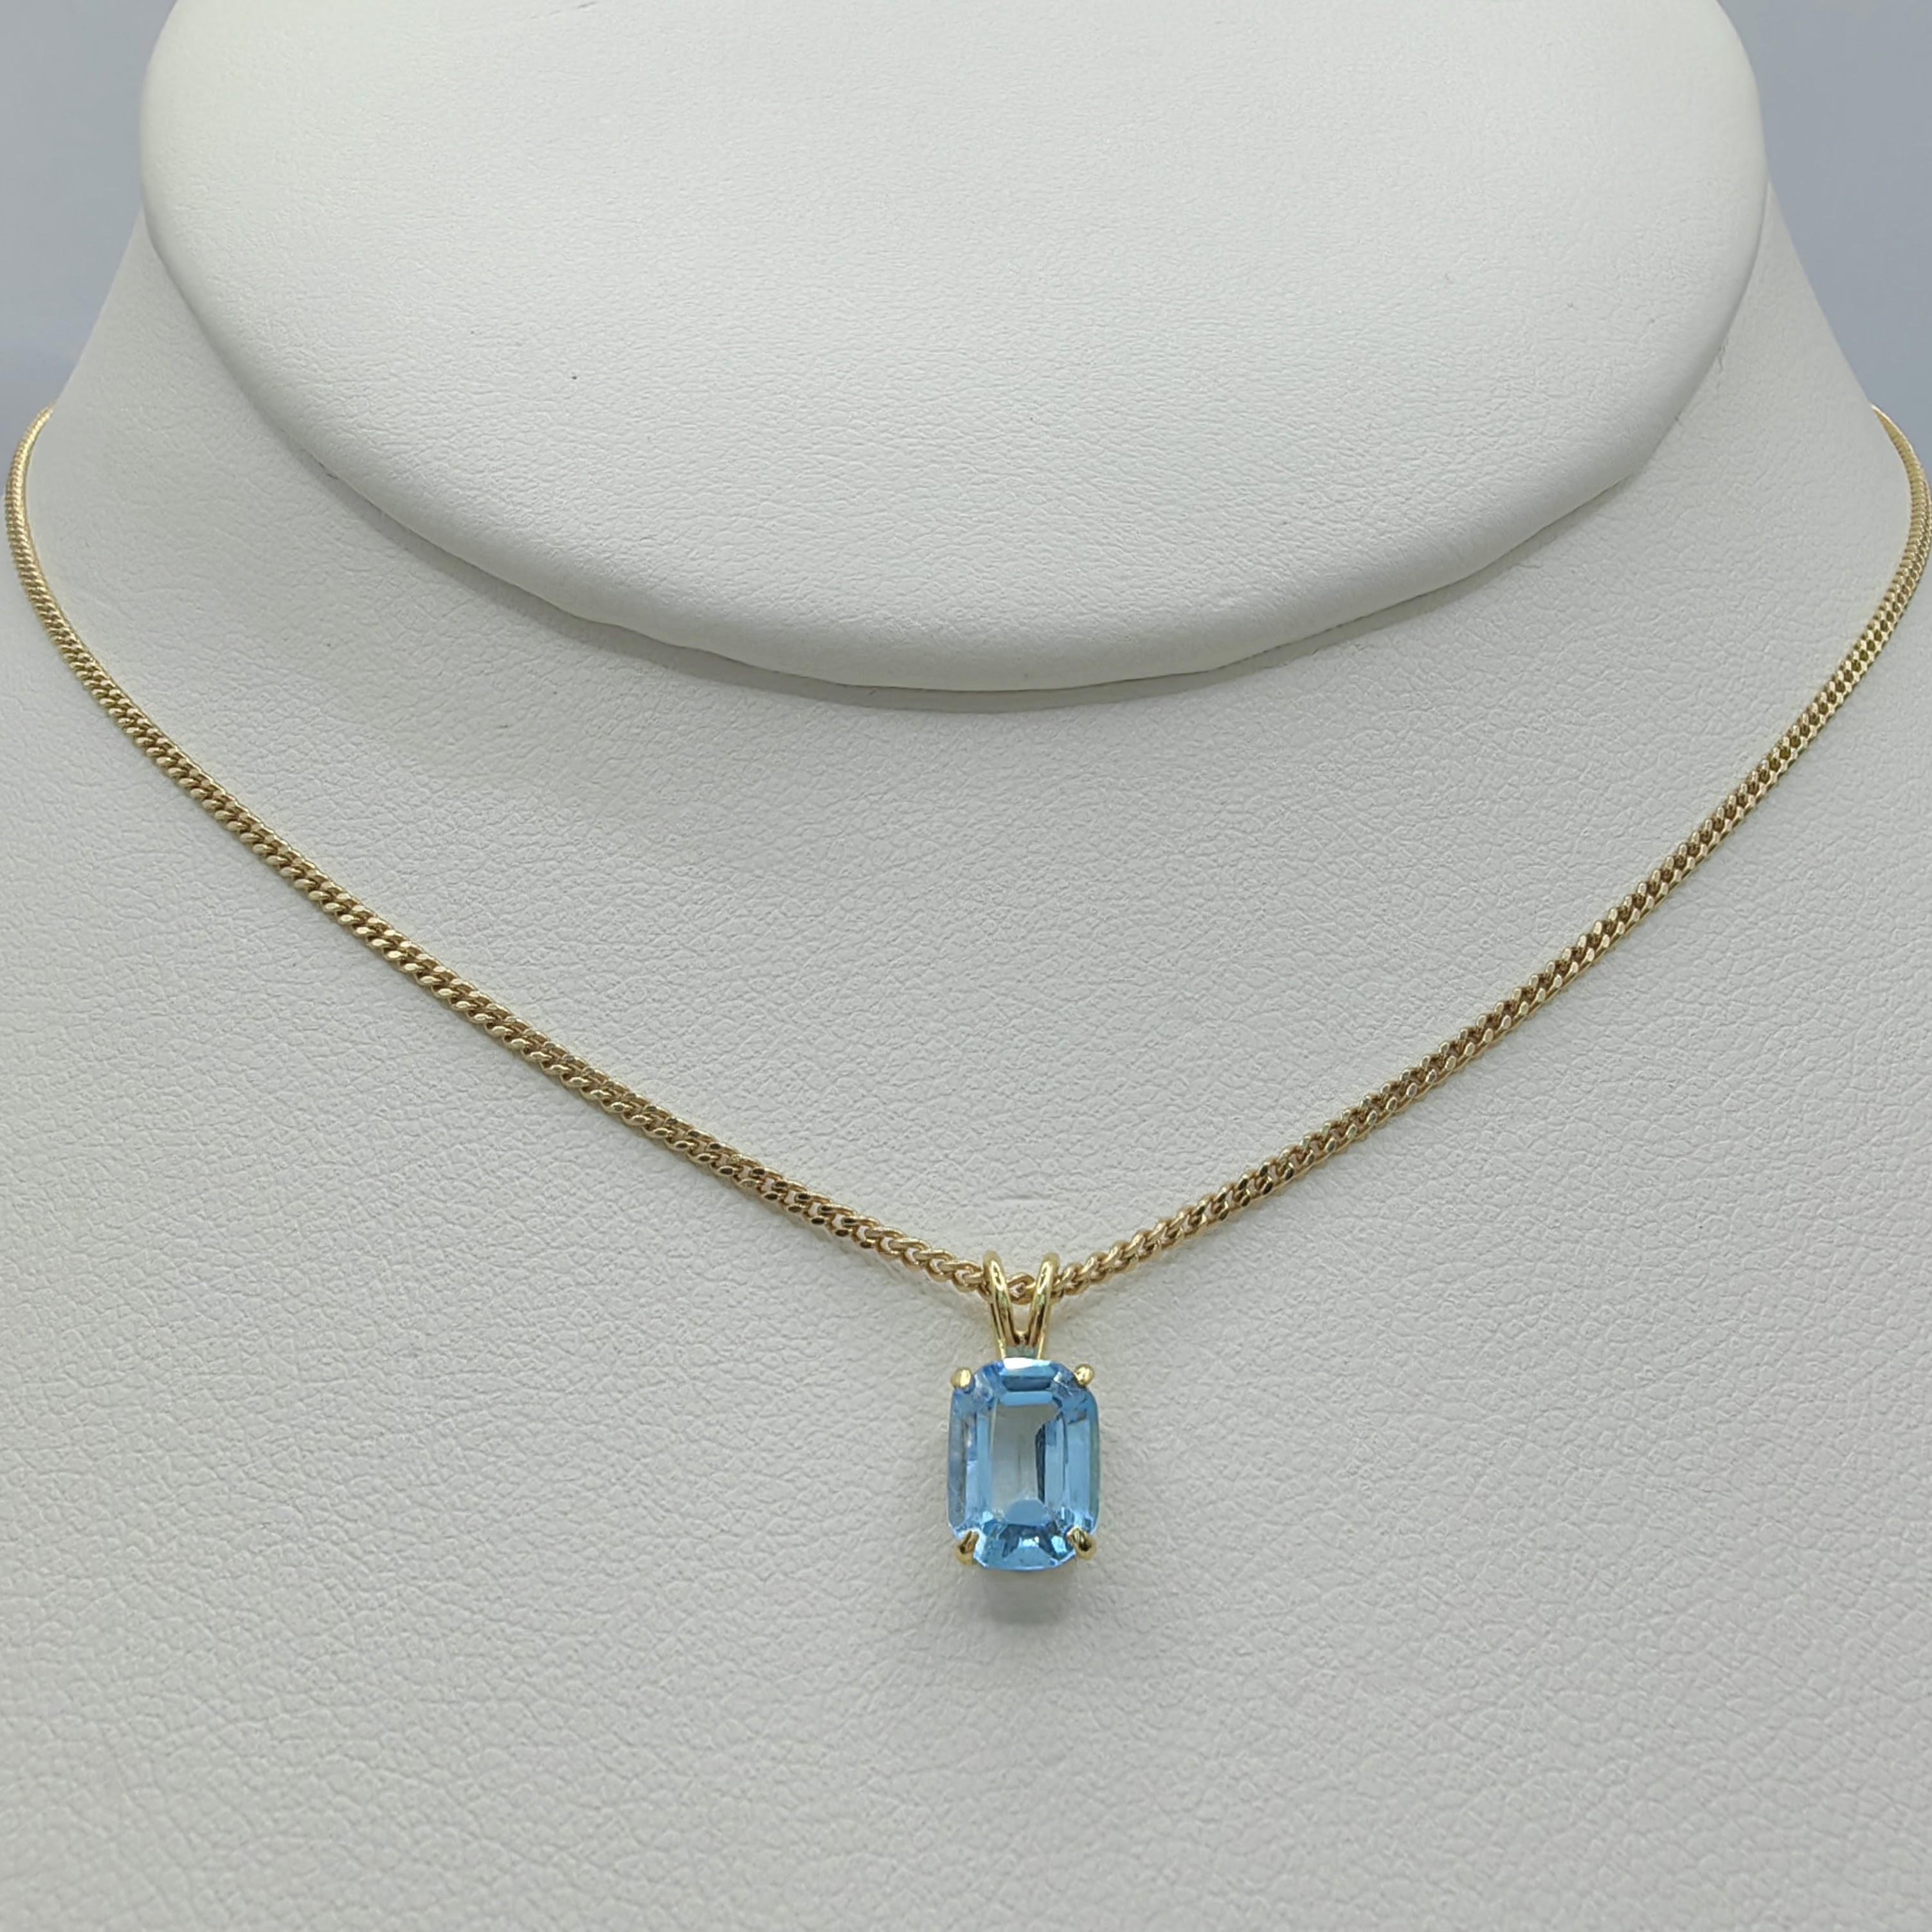 Nous vous présentons notre collier pendentif Topaze bleue taille émeraude des années 1980 en or jaune 14 carats, une pièce intemporelle qui respire l'élégance et la sophistication. Ce pendentif exquis met en valeur une topaze bleue de taille